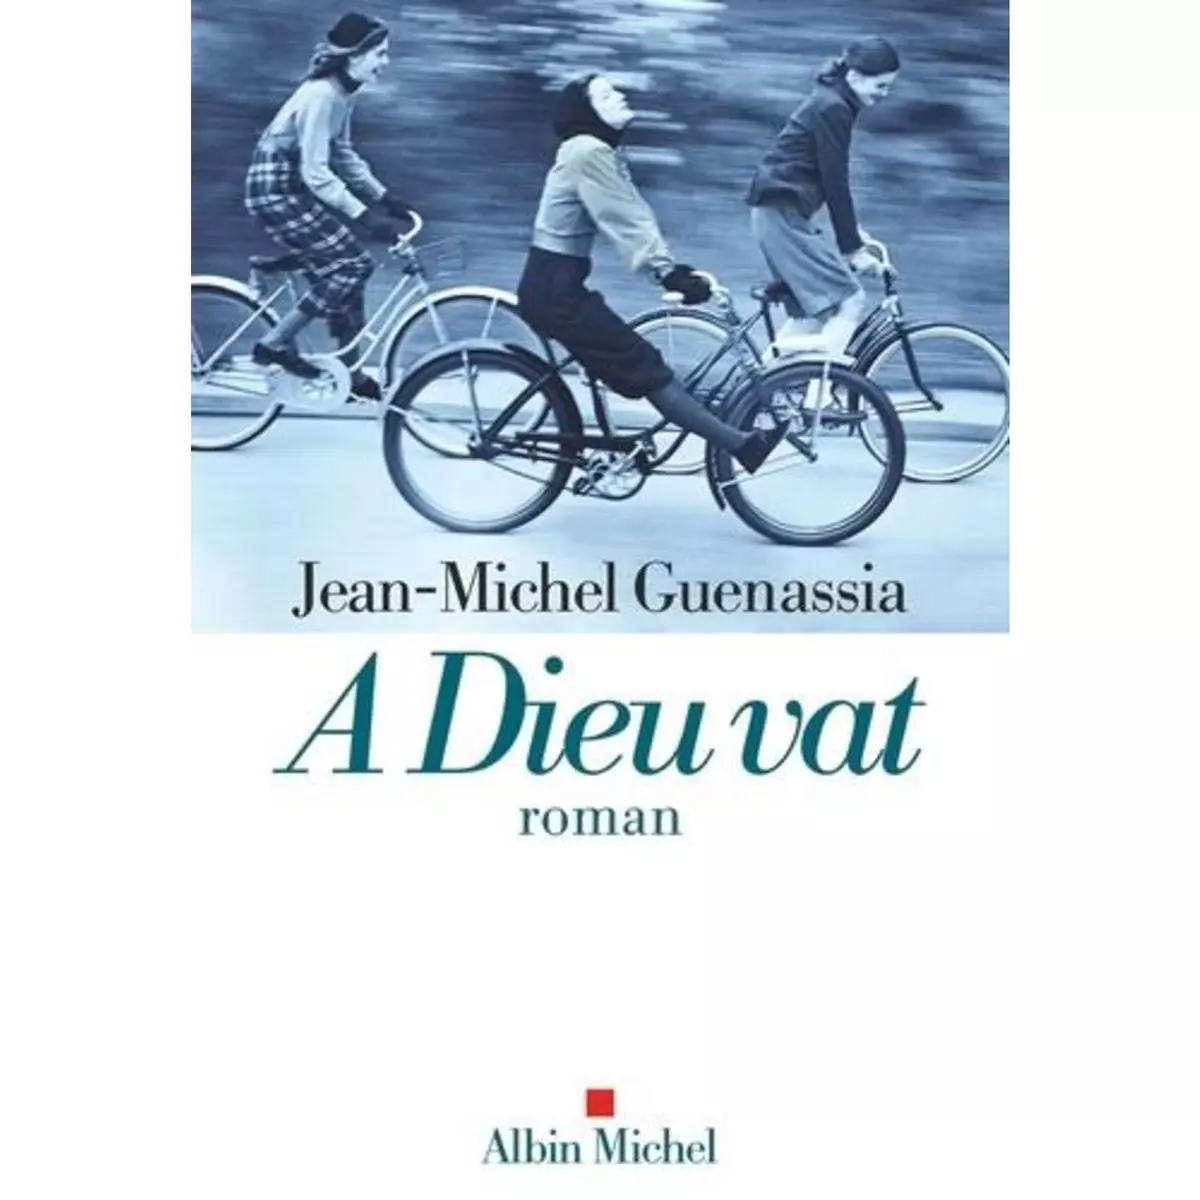  A DIEU VAT, Guenassia Jean-Michel